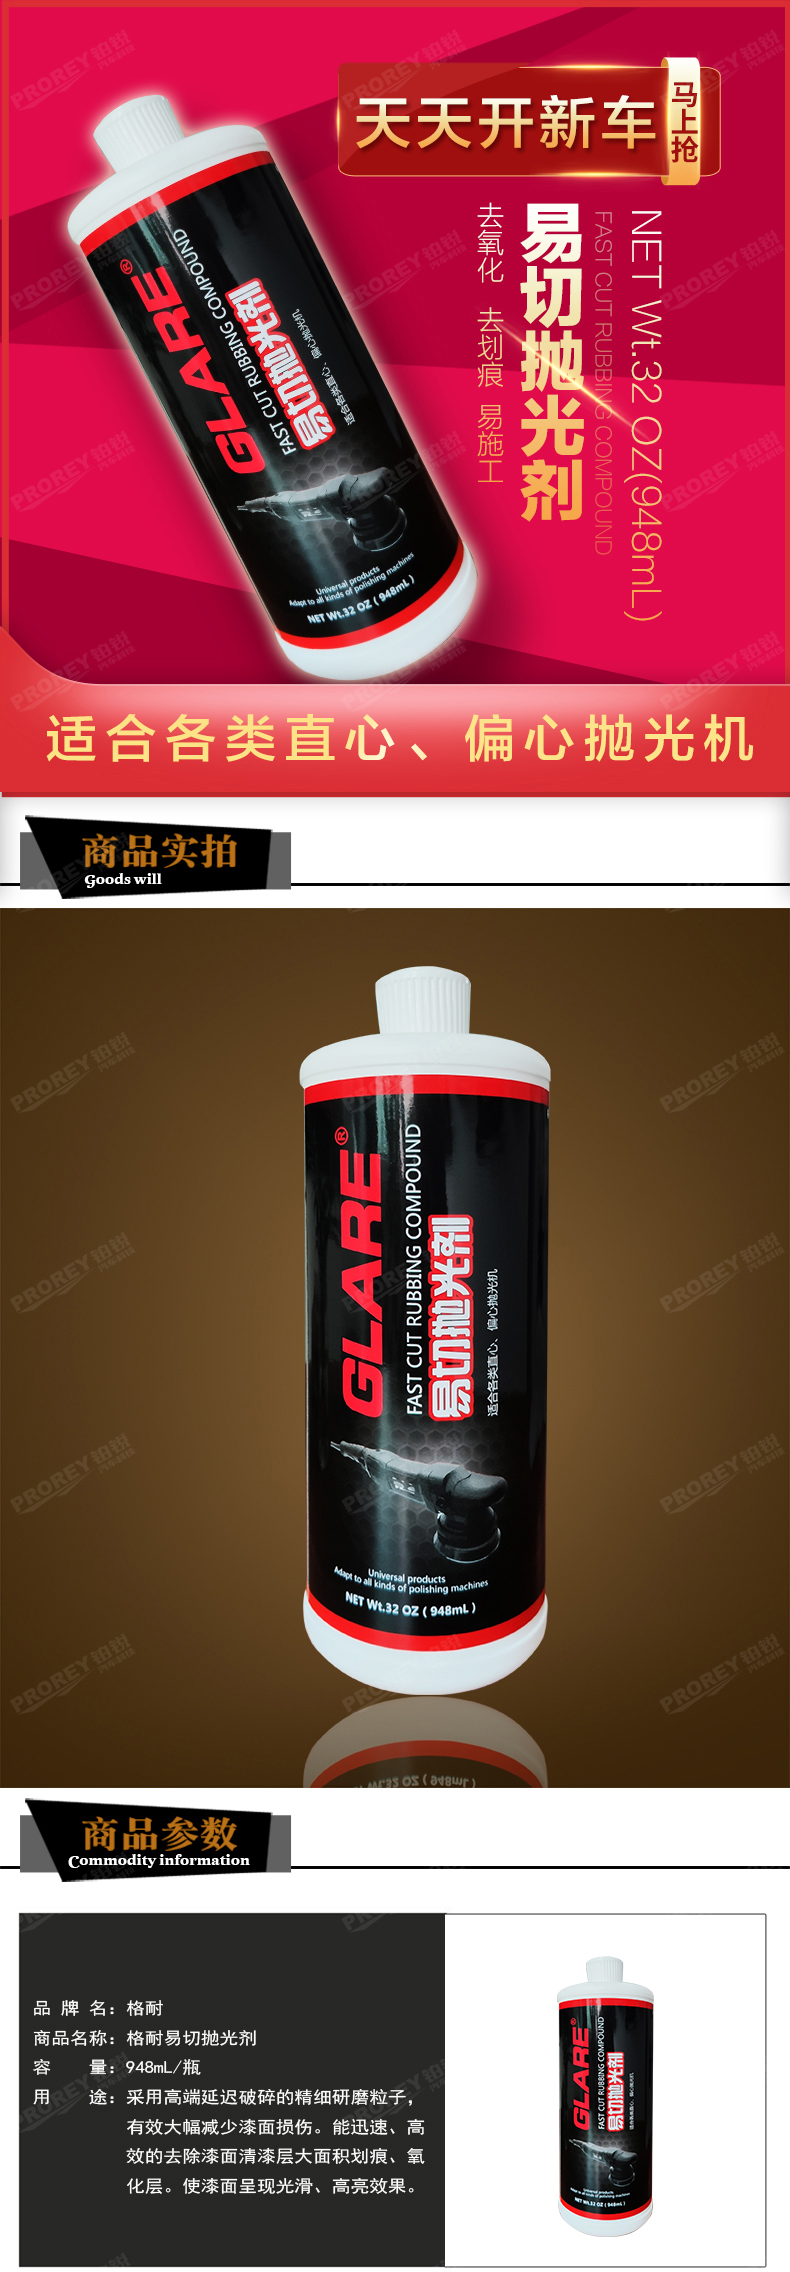 GW-180080582-GLARE格耐 GL-026(948mL瓶) 格耐易切抛光剂-1